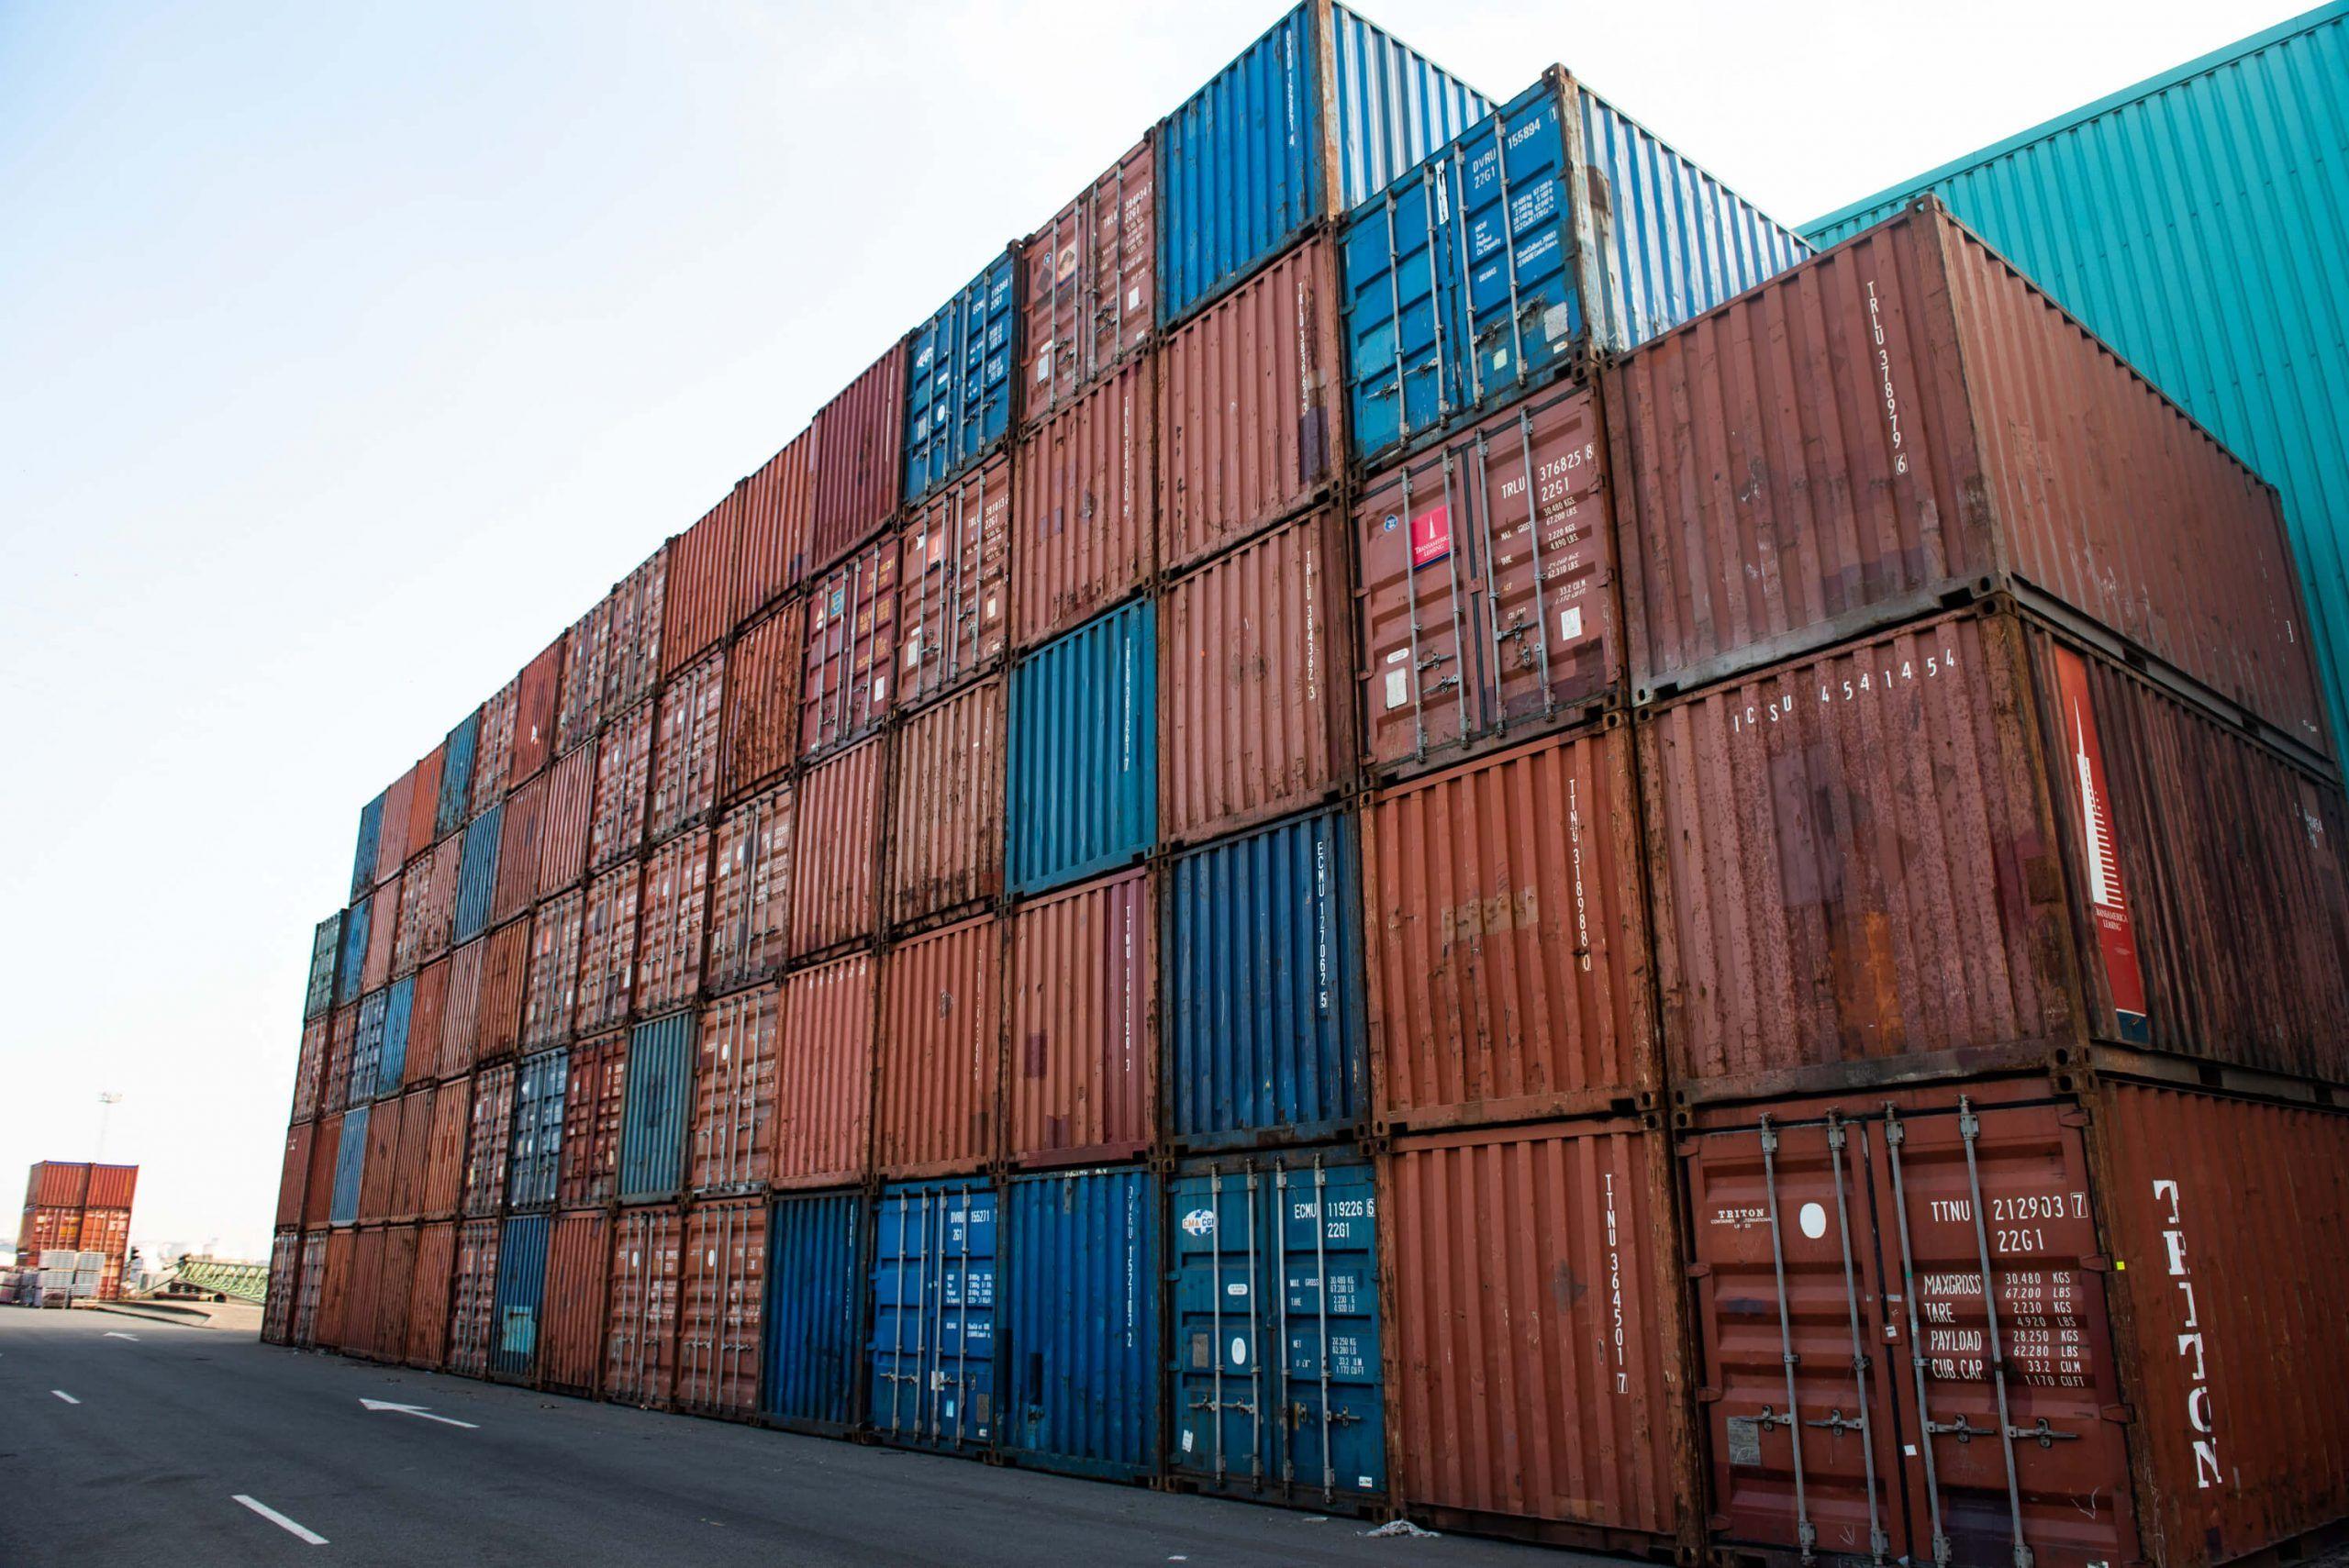 Estados Unidos obtuvo la primera posición entre los mayores importadores de contenedores en 2021, con compras por 1,032 millones de dólares. The United States obtained the first position among the largest container importers in 2021, with purchases of 1,032 million dollars.